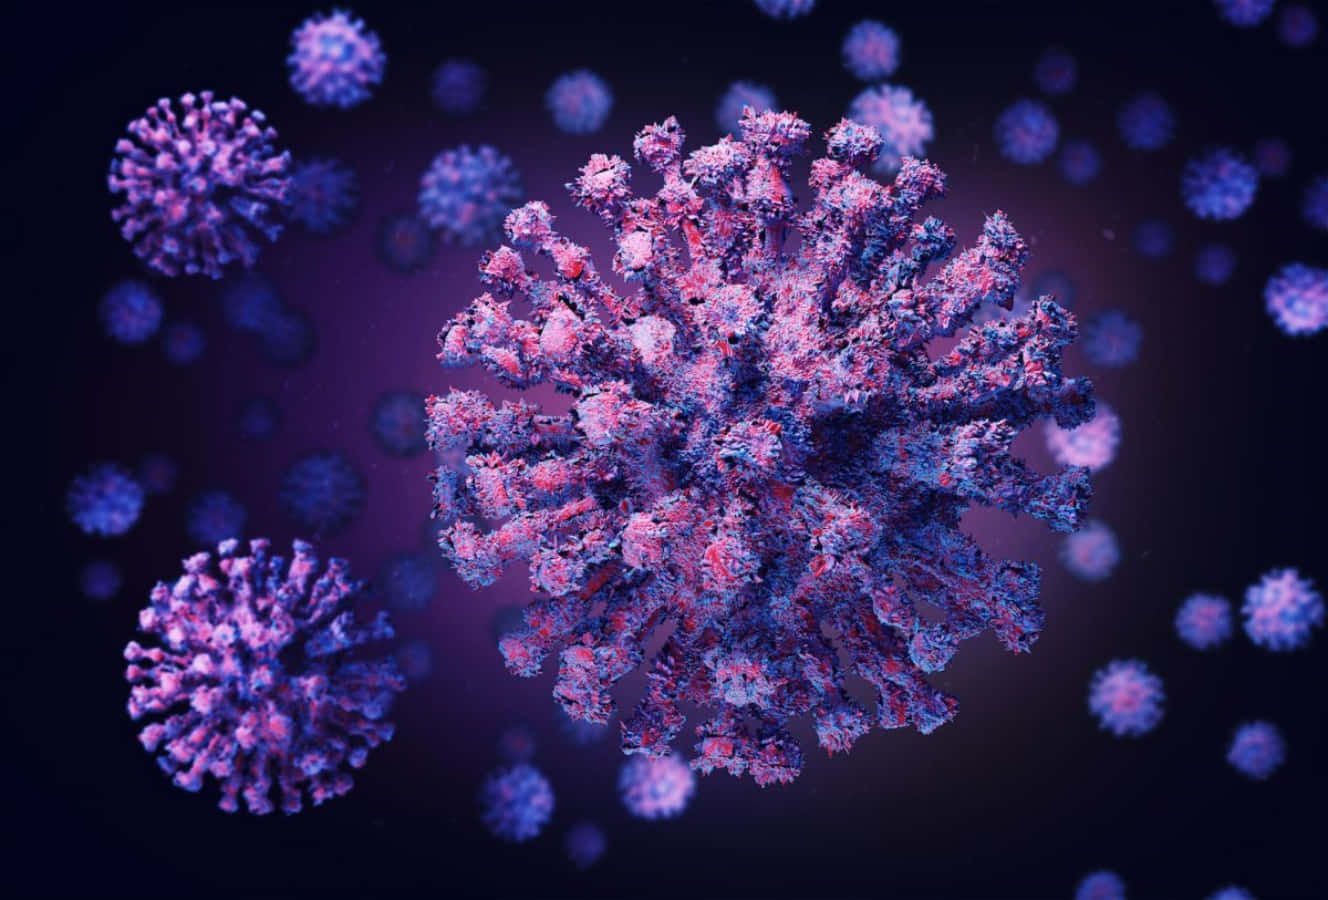 Imagemdo Coronavírus Com Resolução De 1328 X 900.